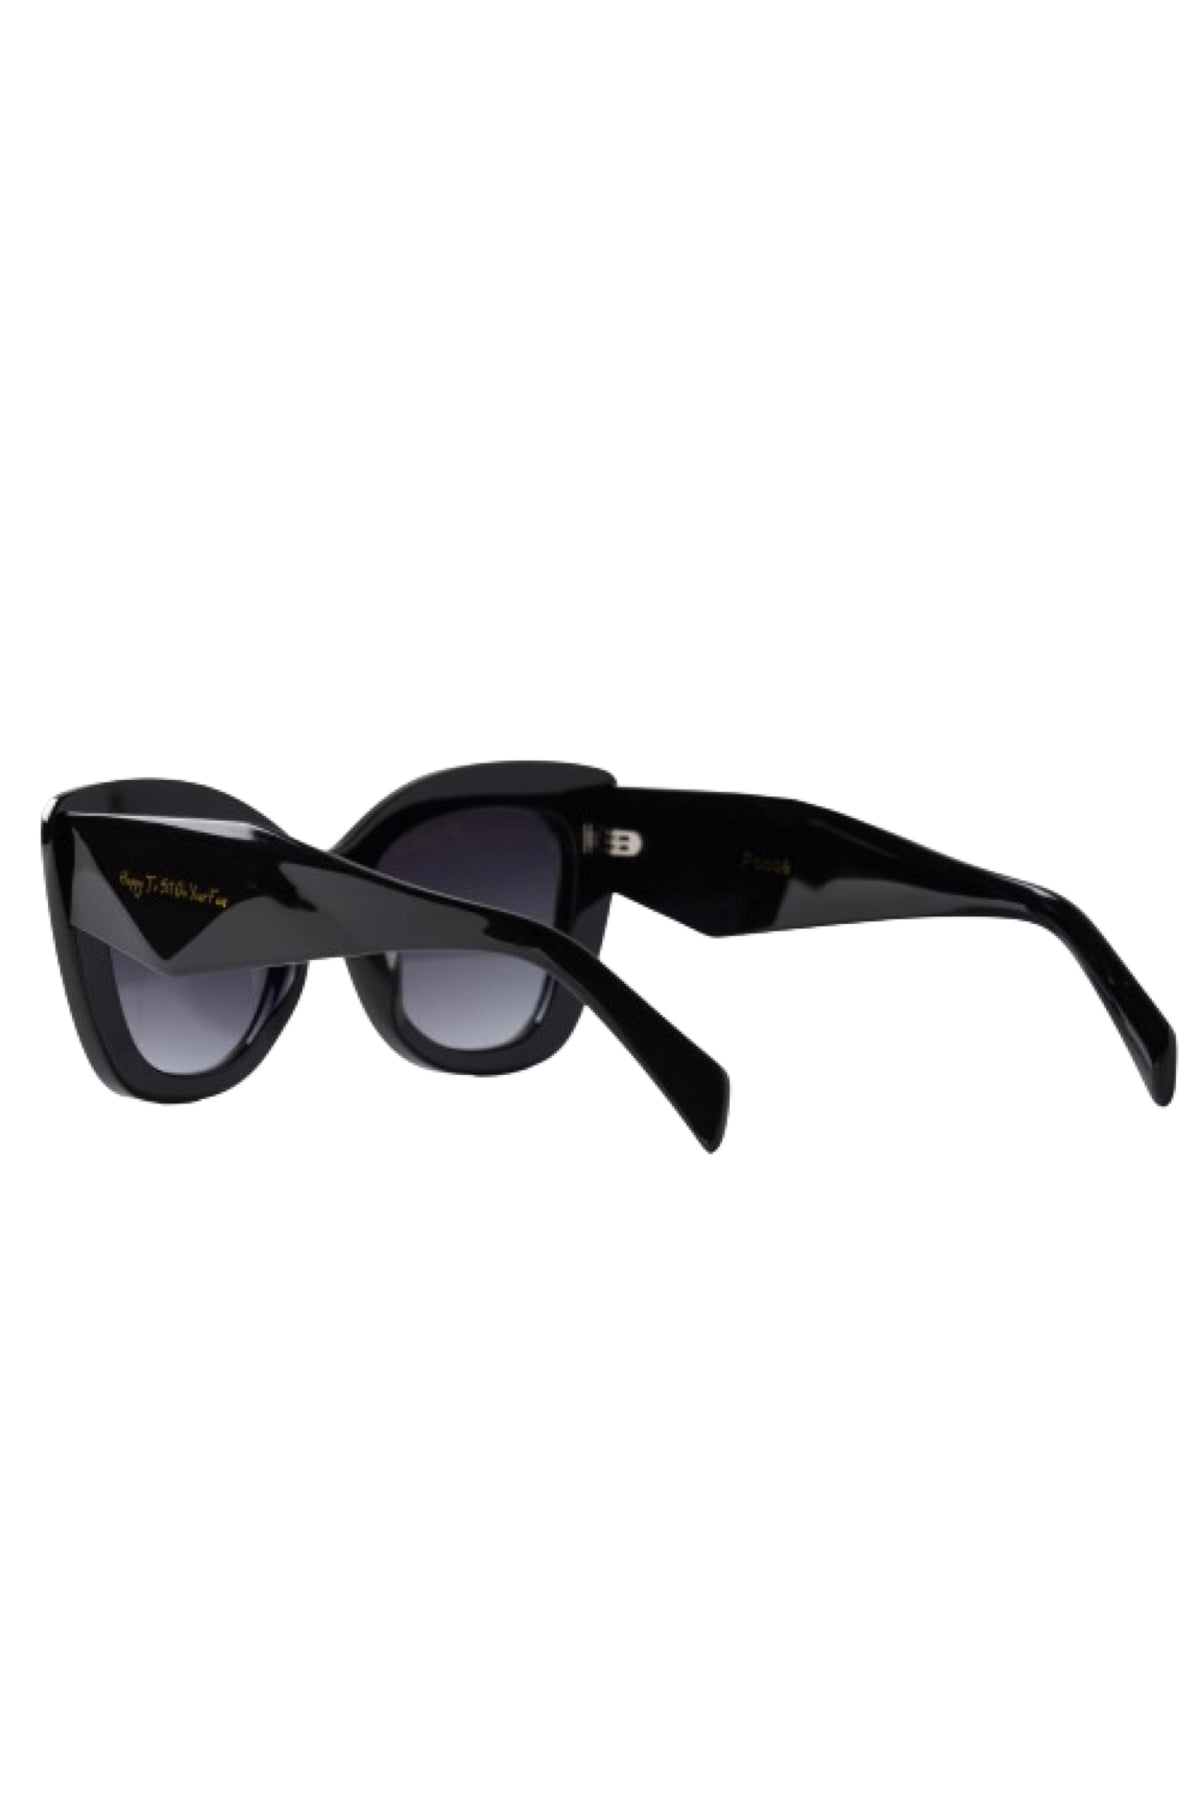 Poosé Noir Sunglasses